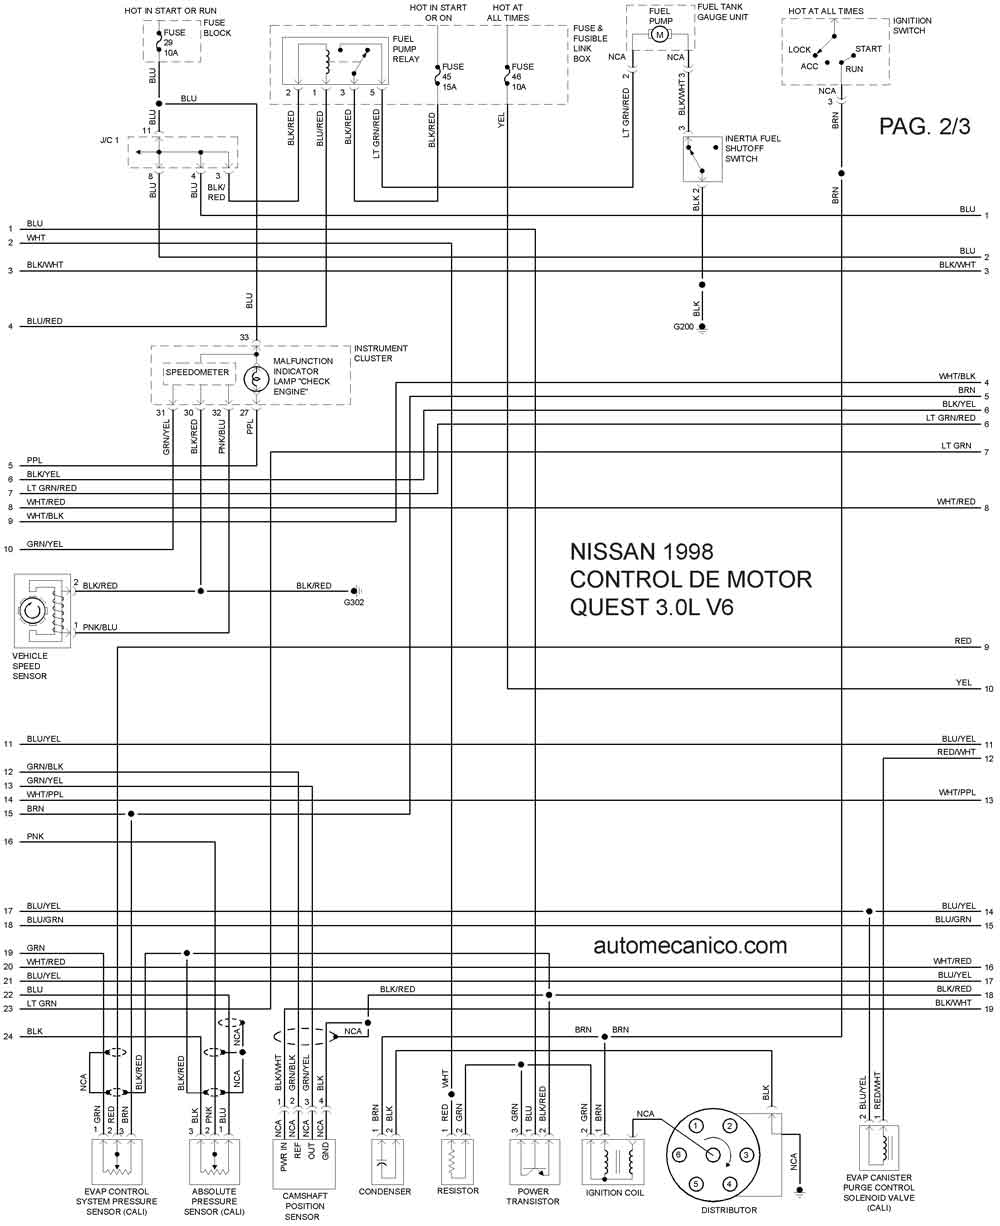 Diagramas electricos automotrices nissan #6